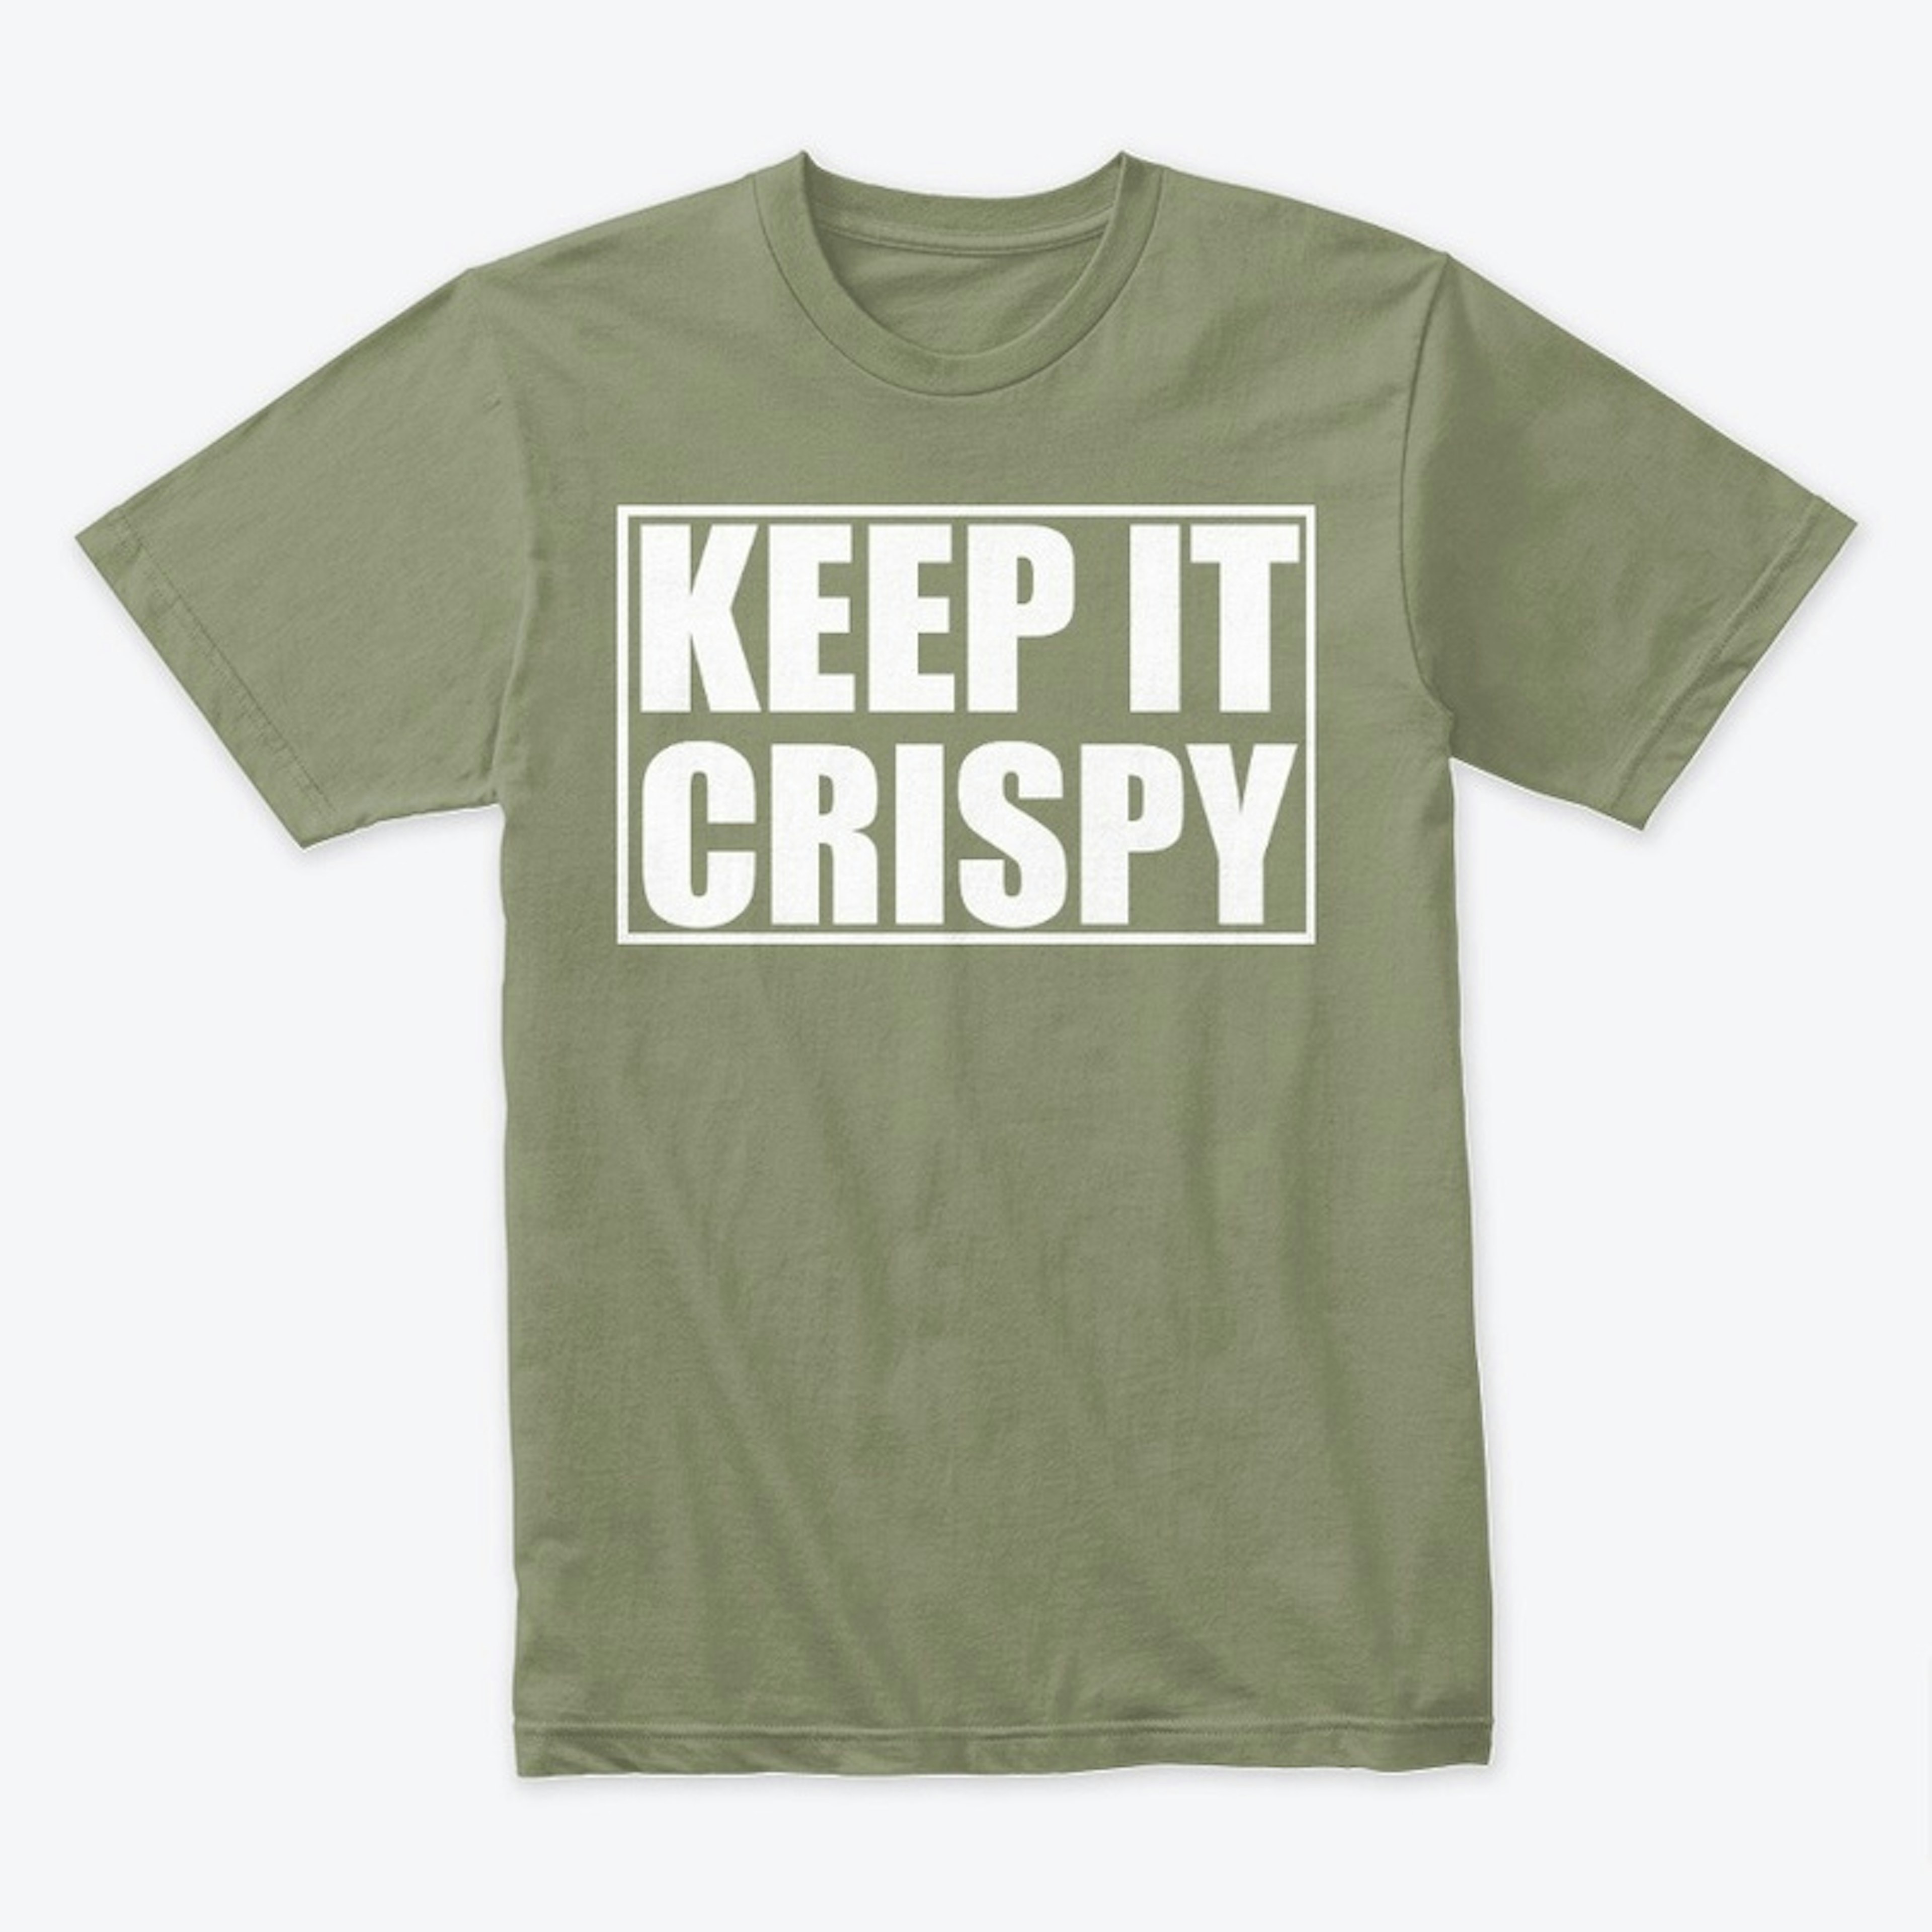 Keep it Crispy!